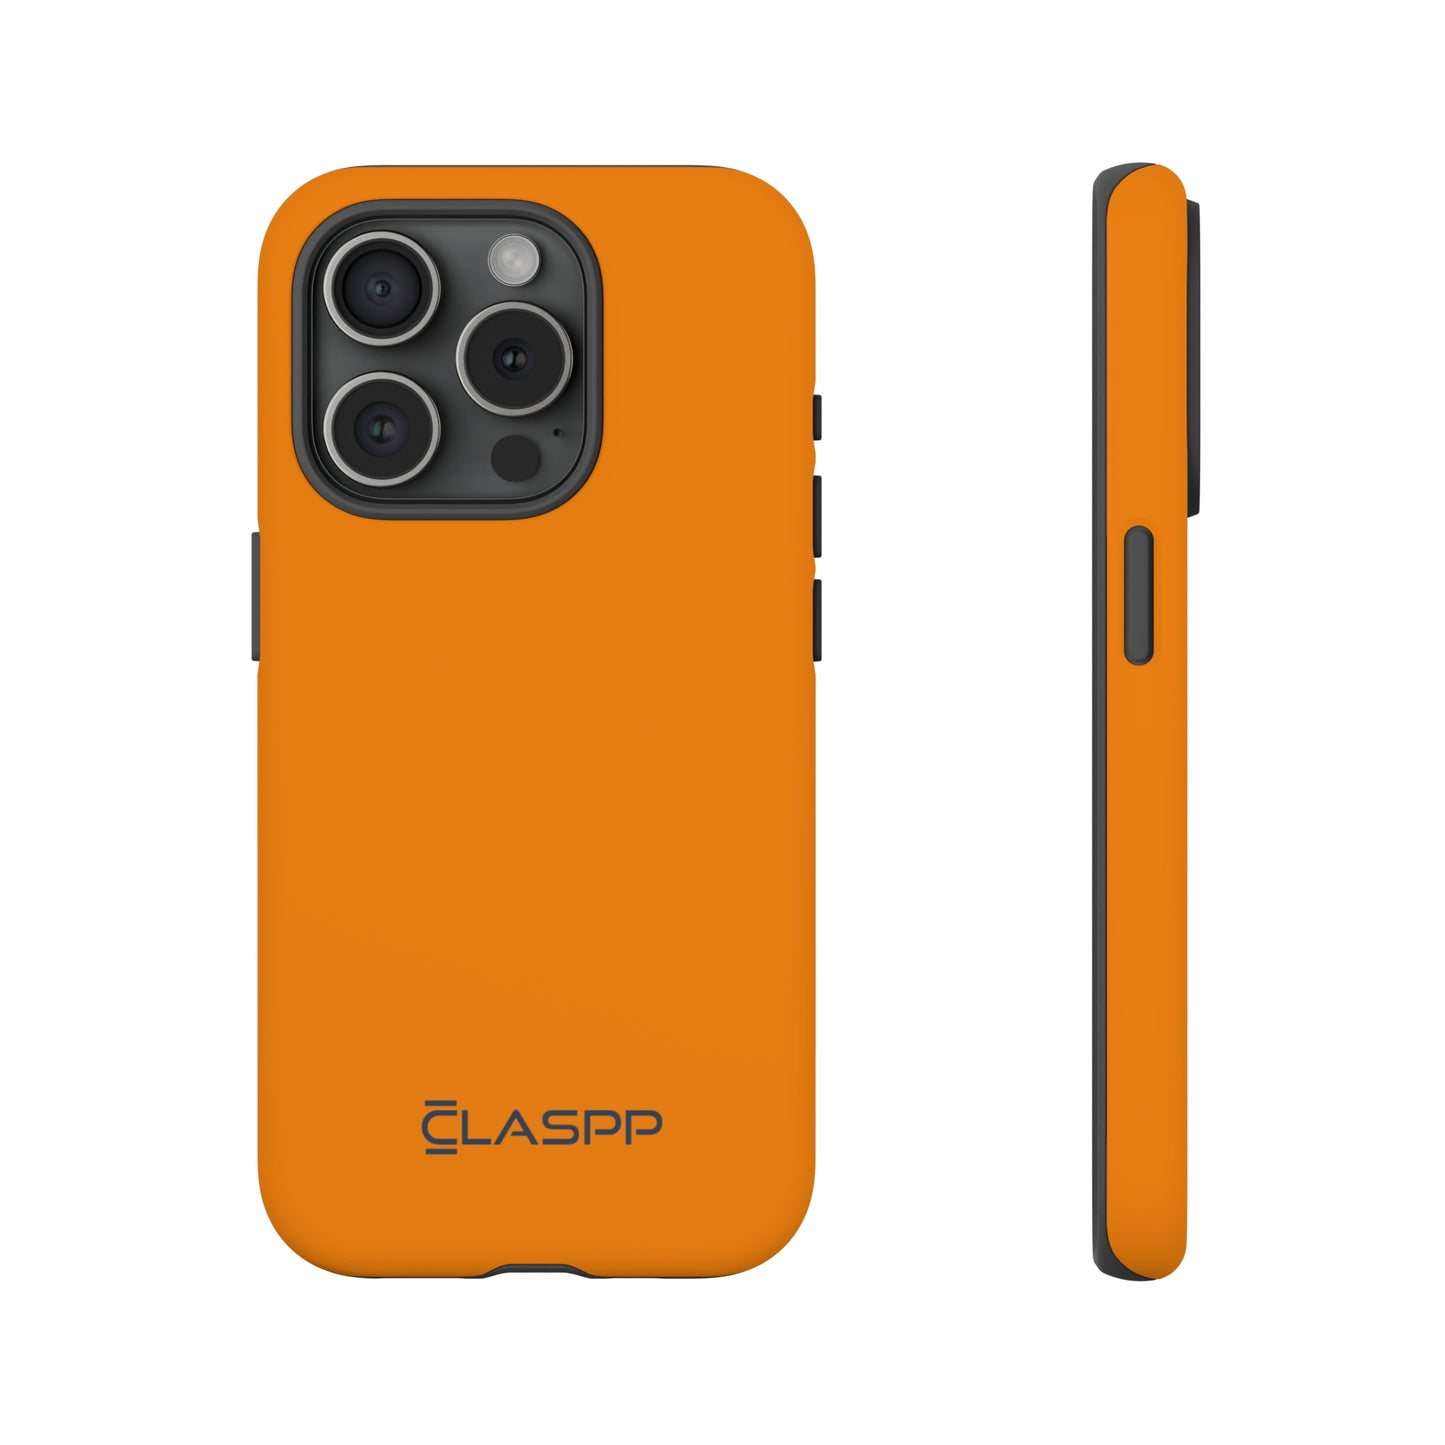 Sunrise Orange | Hardshell Dual Layer Phone Case